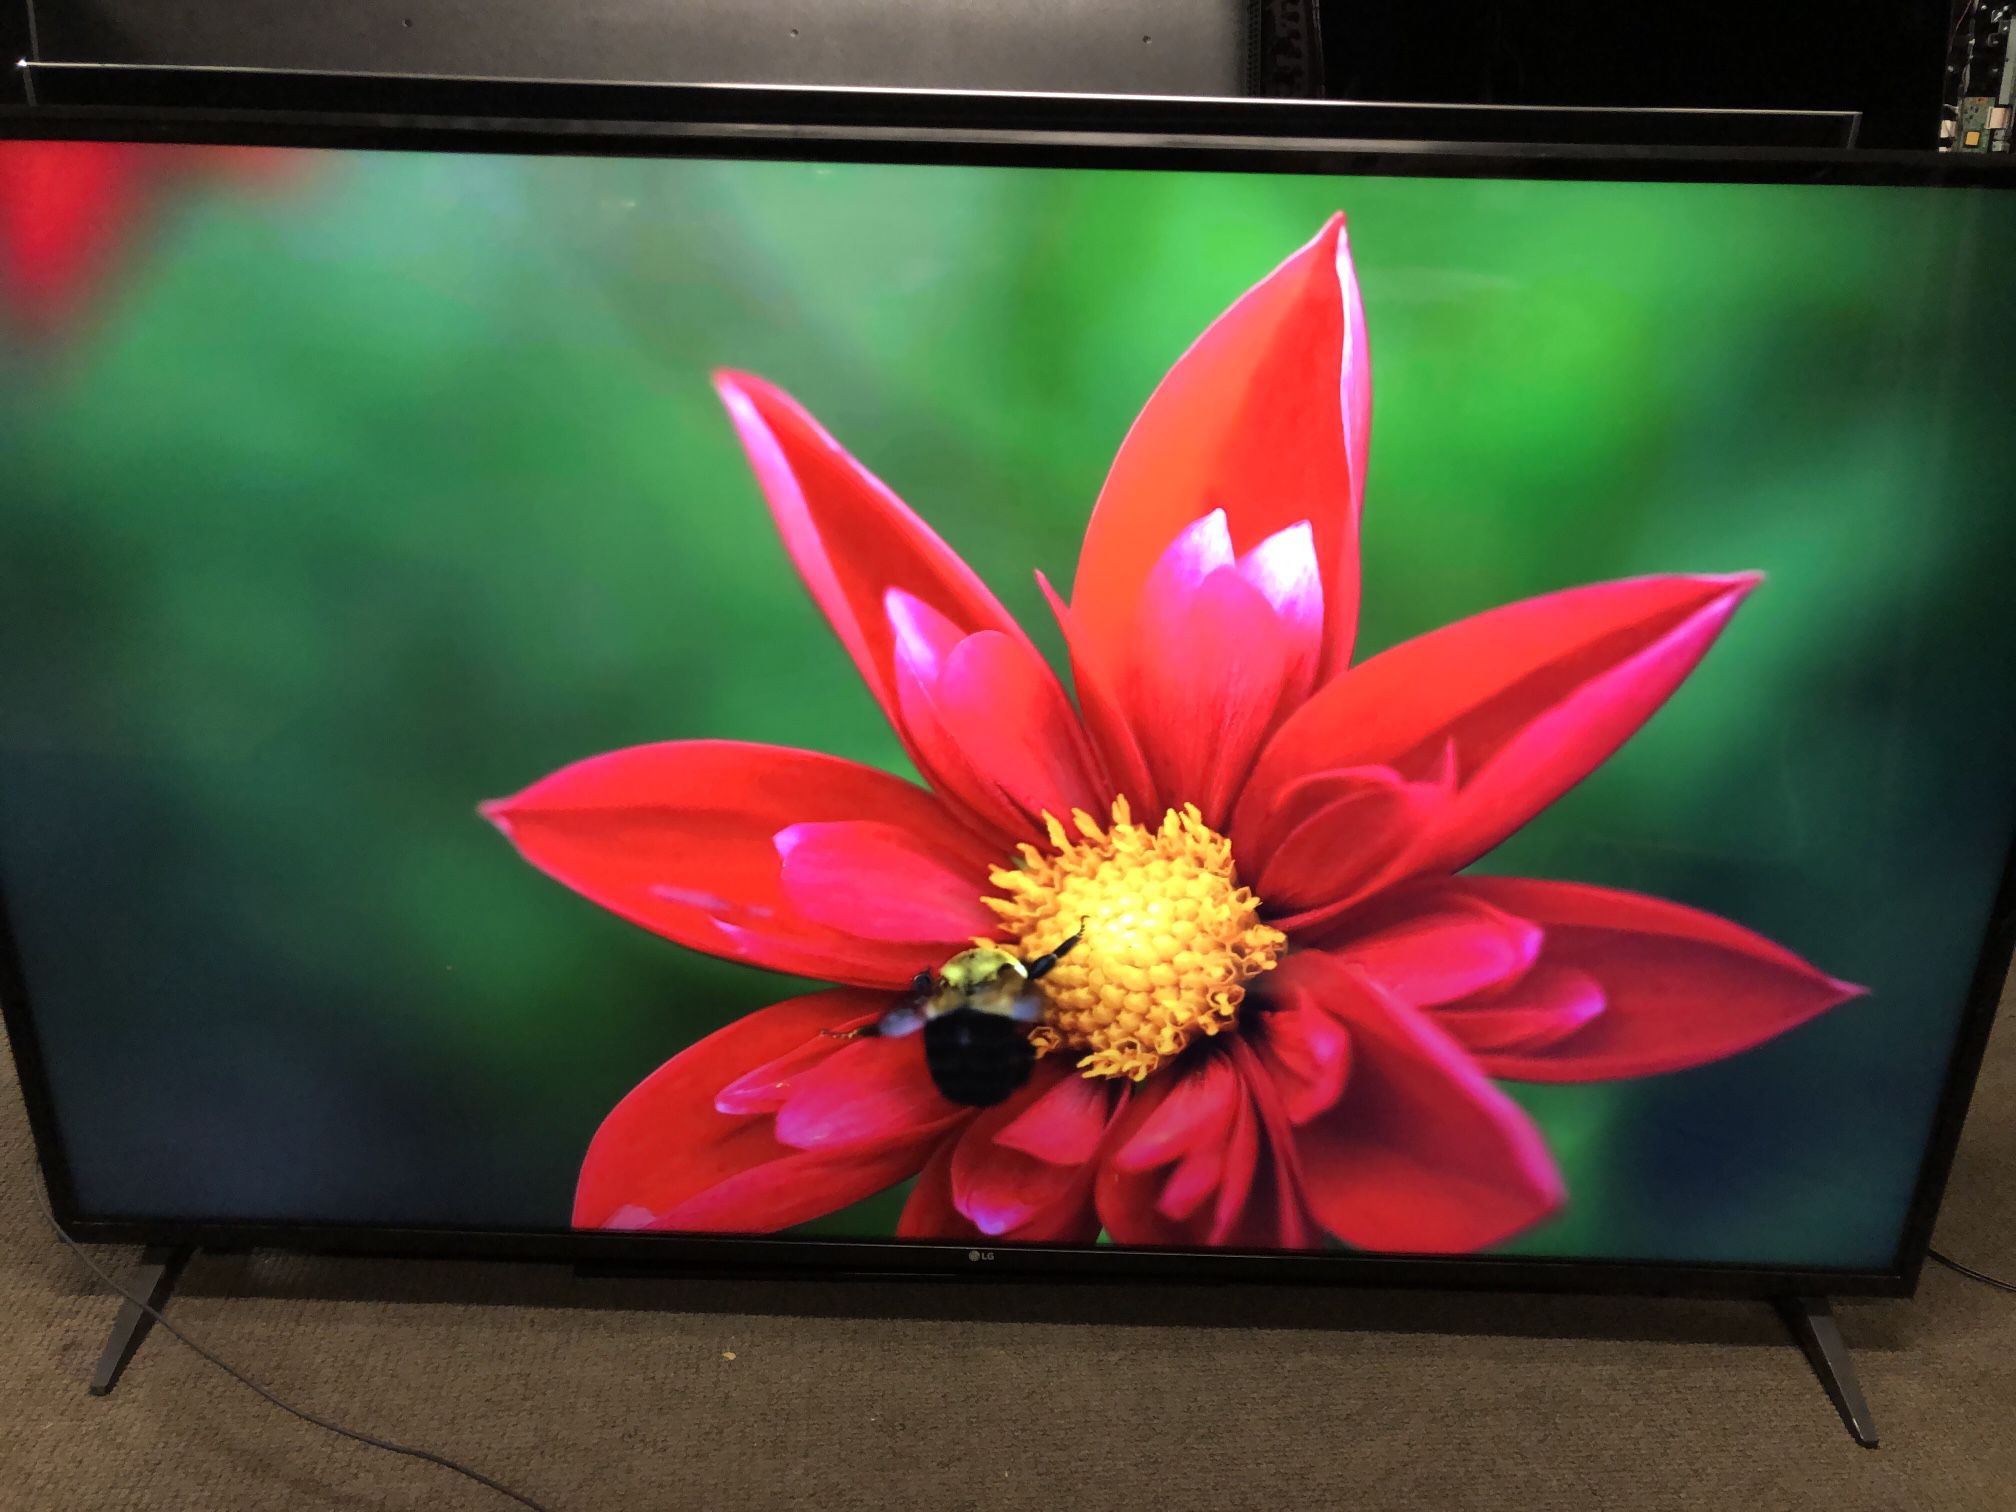 Full HD LED 4K Tv 65” 2019 LG 65uk6090 Smart Tv